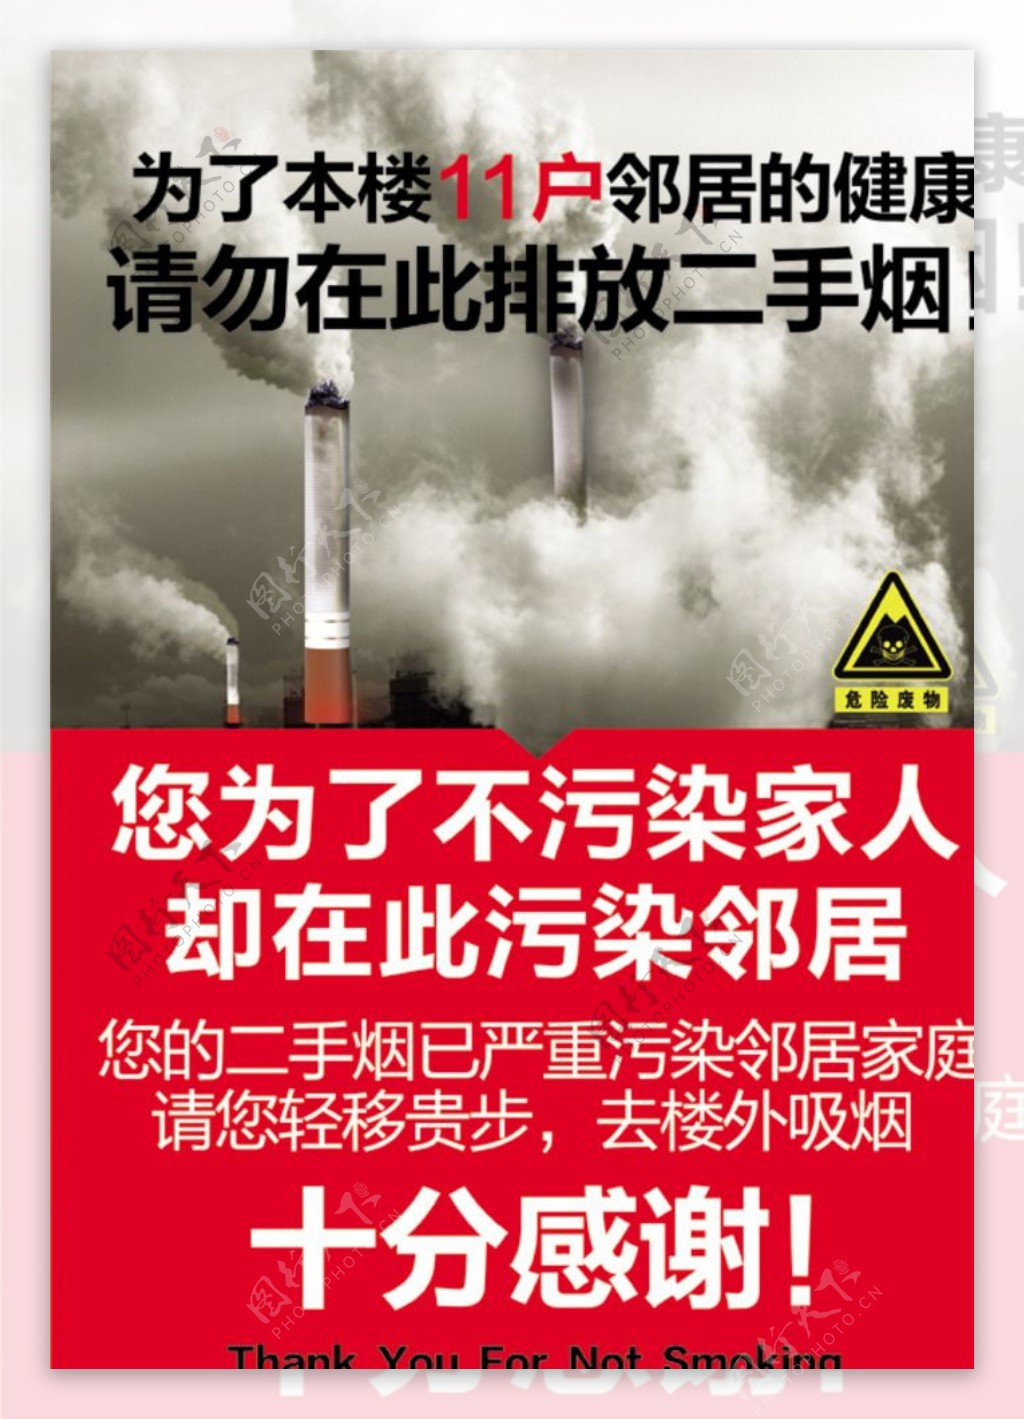 禁止排放二手烟图片